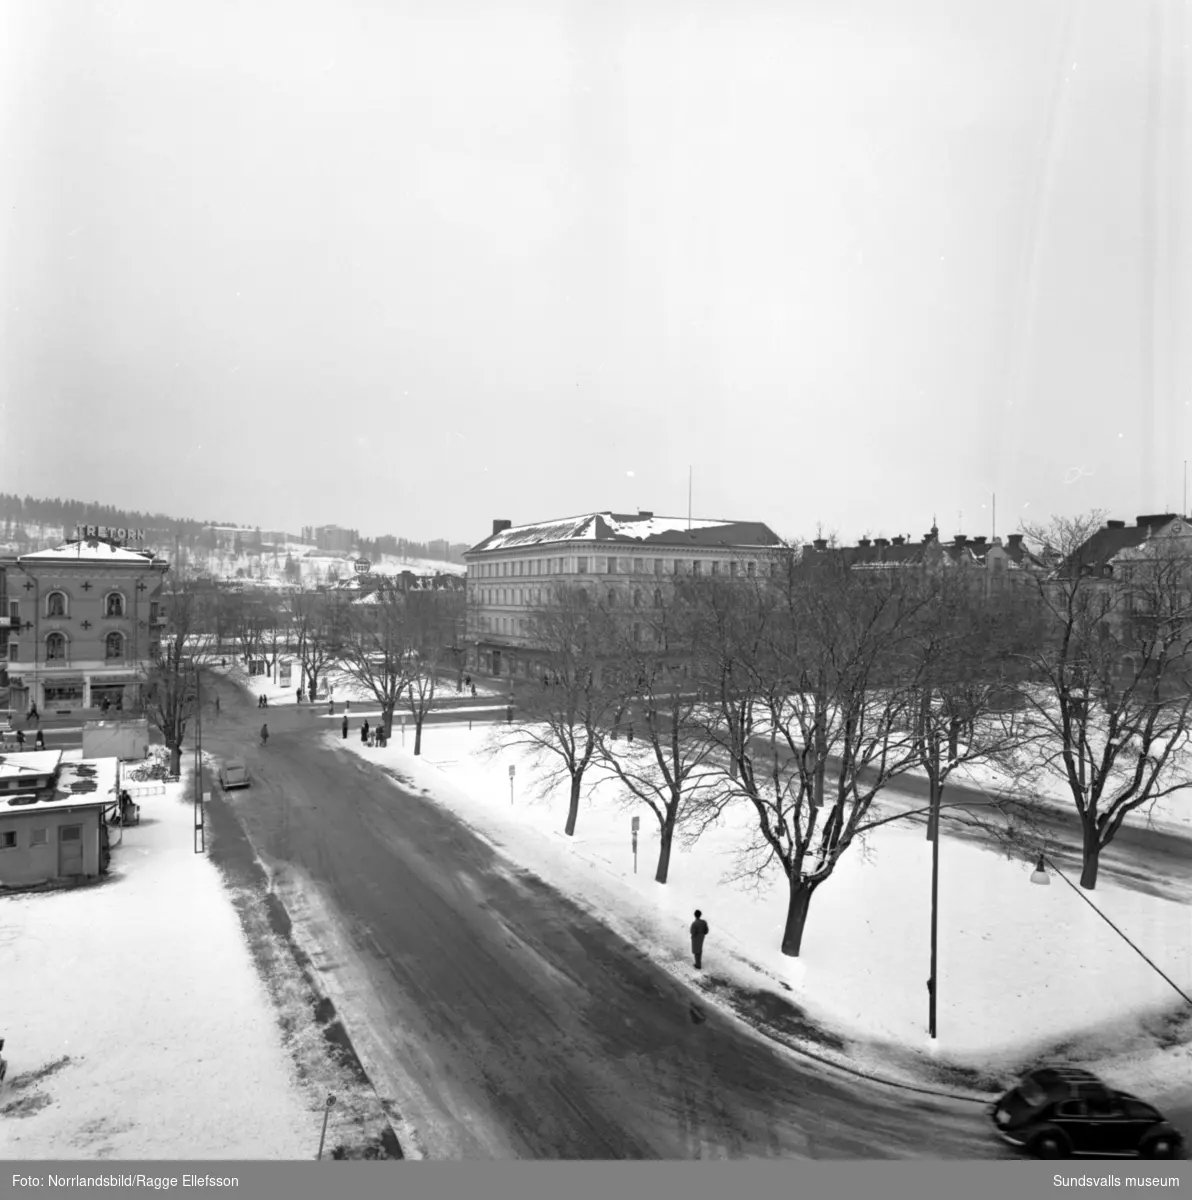 Panorama från före detta Centralhotellet och Sundsvallsbanken norrut över Stora torget, Vängåvan och Storgatan.